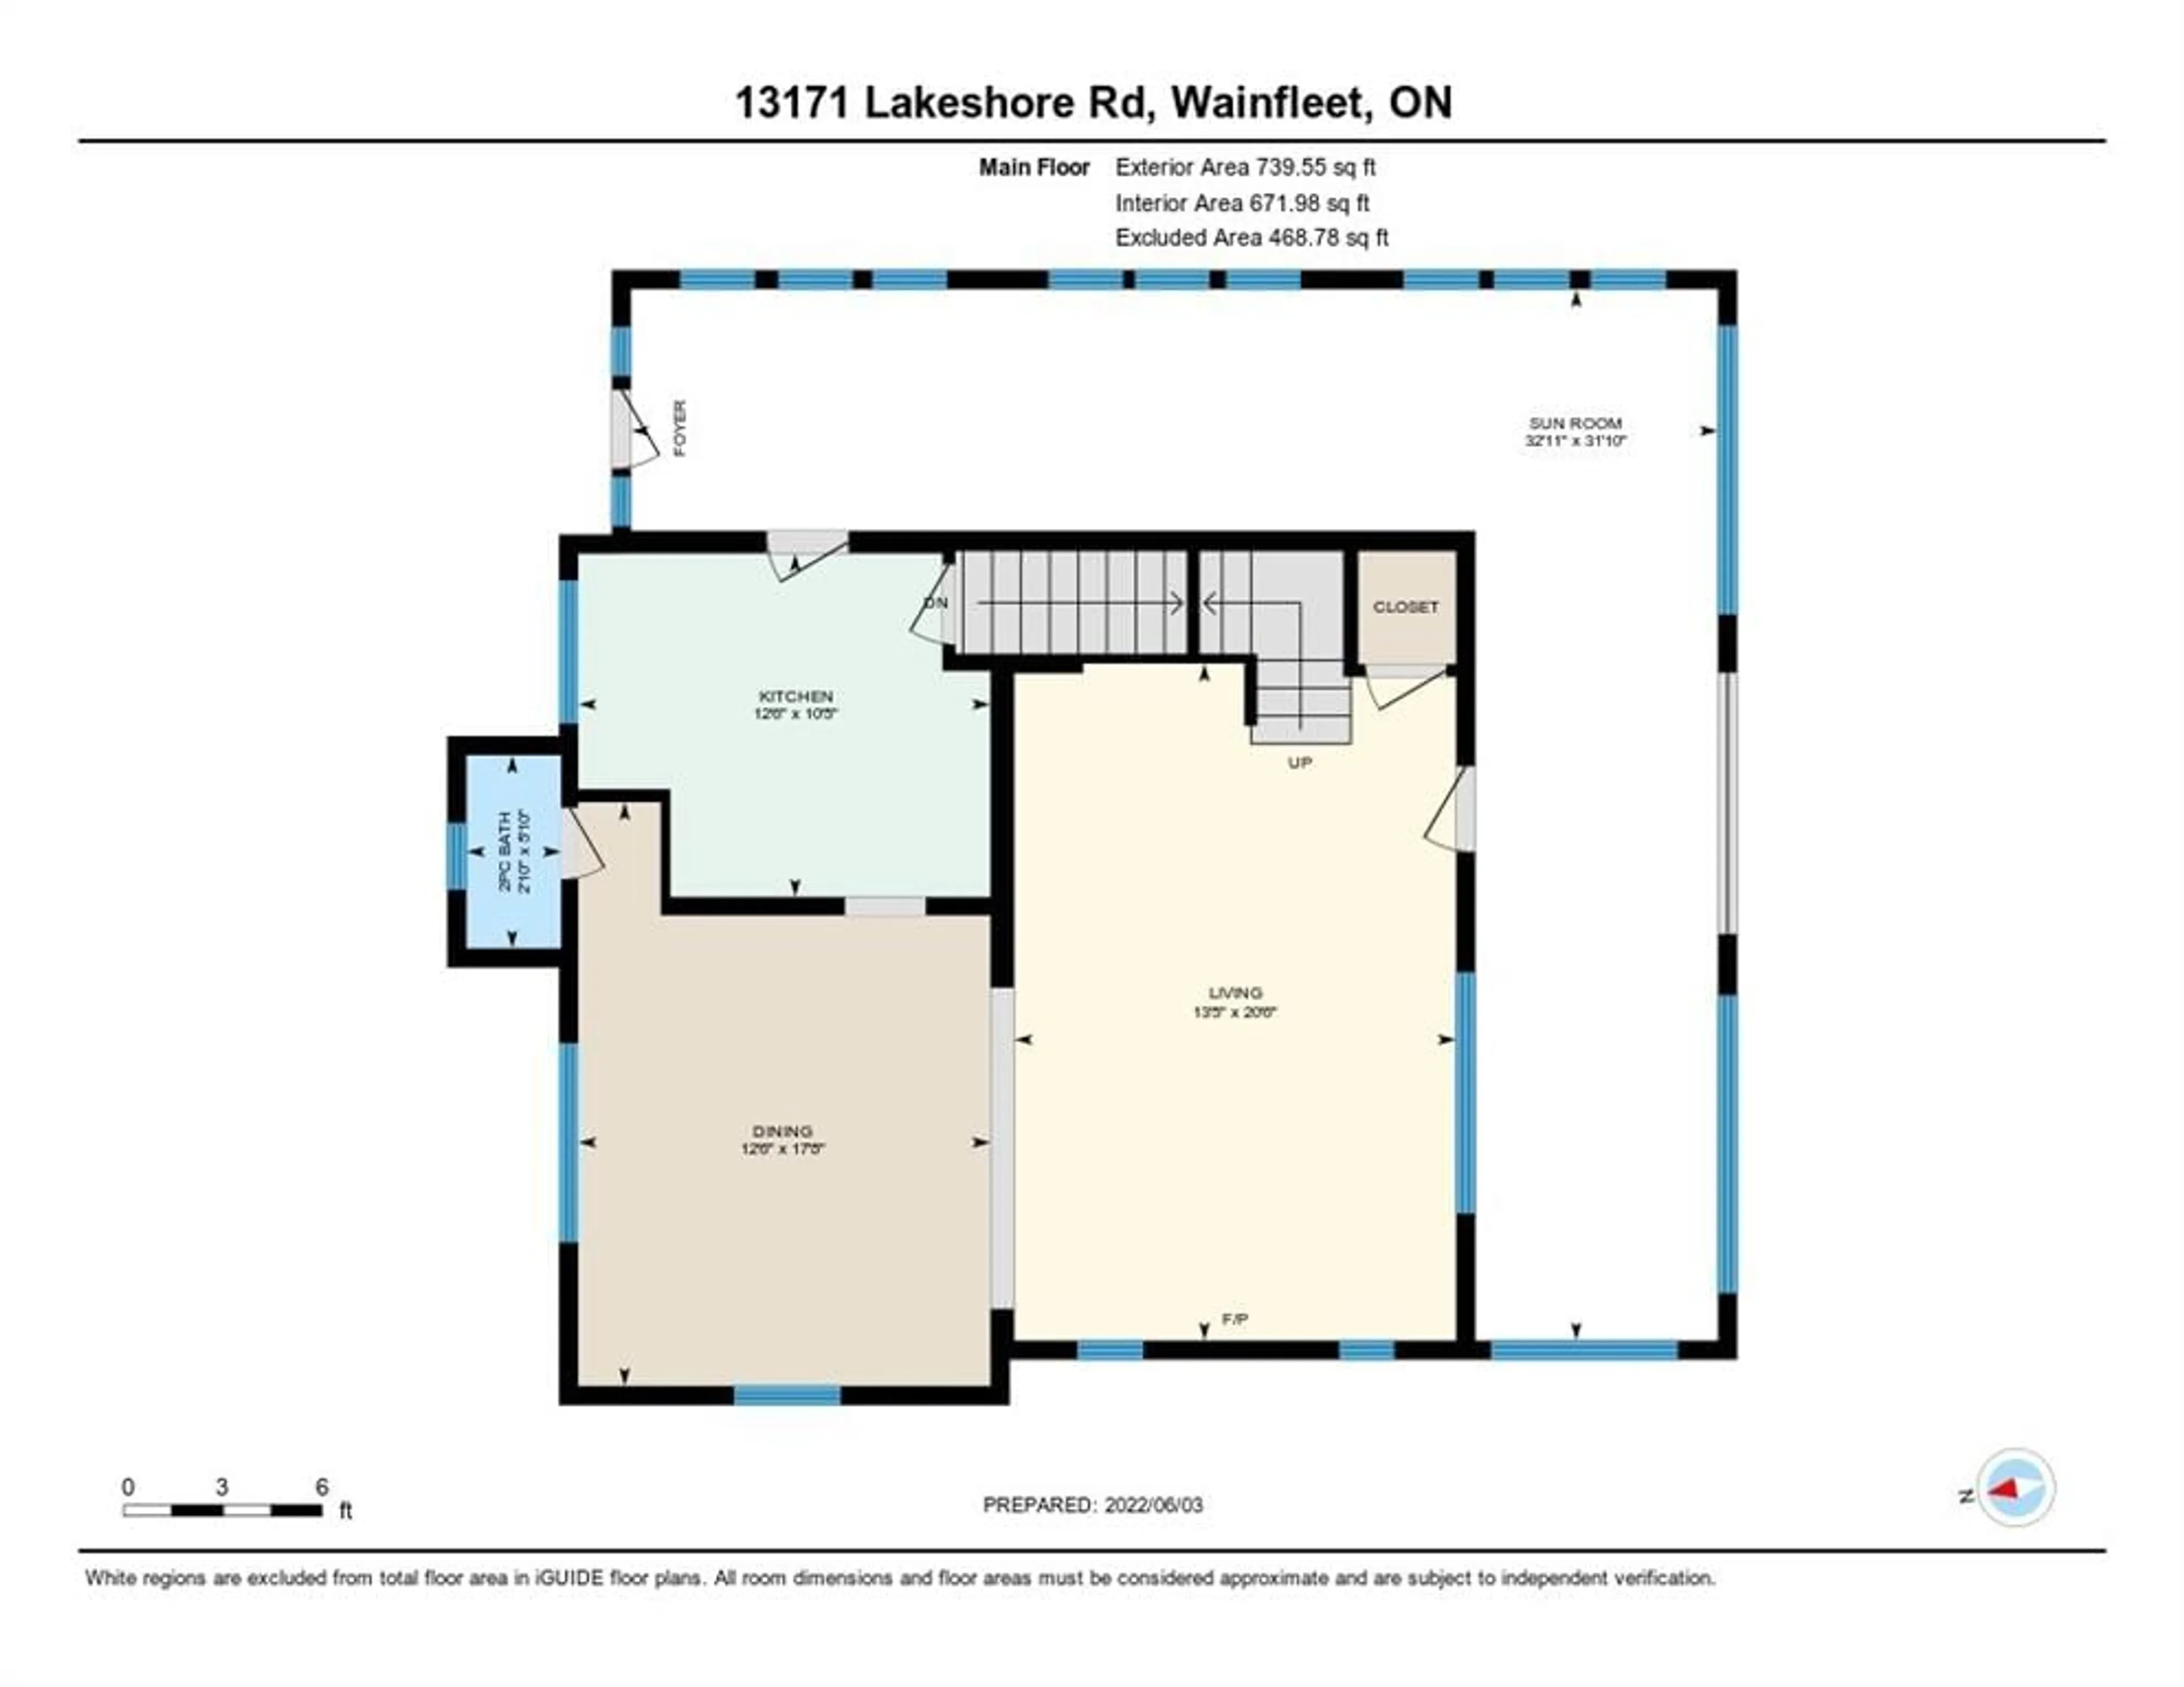 Floor plan for 13171 LAKESHORE Rd, Wainfleet Ontario L0S 1V0